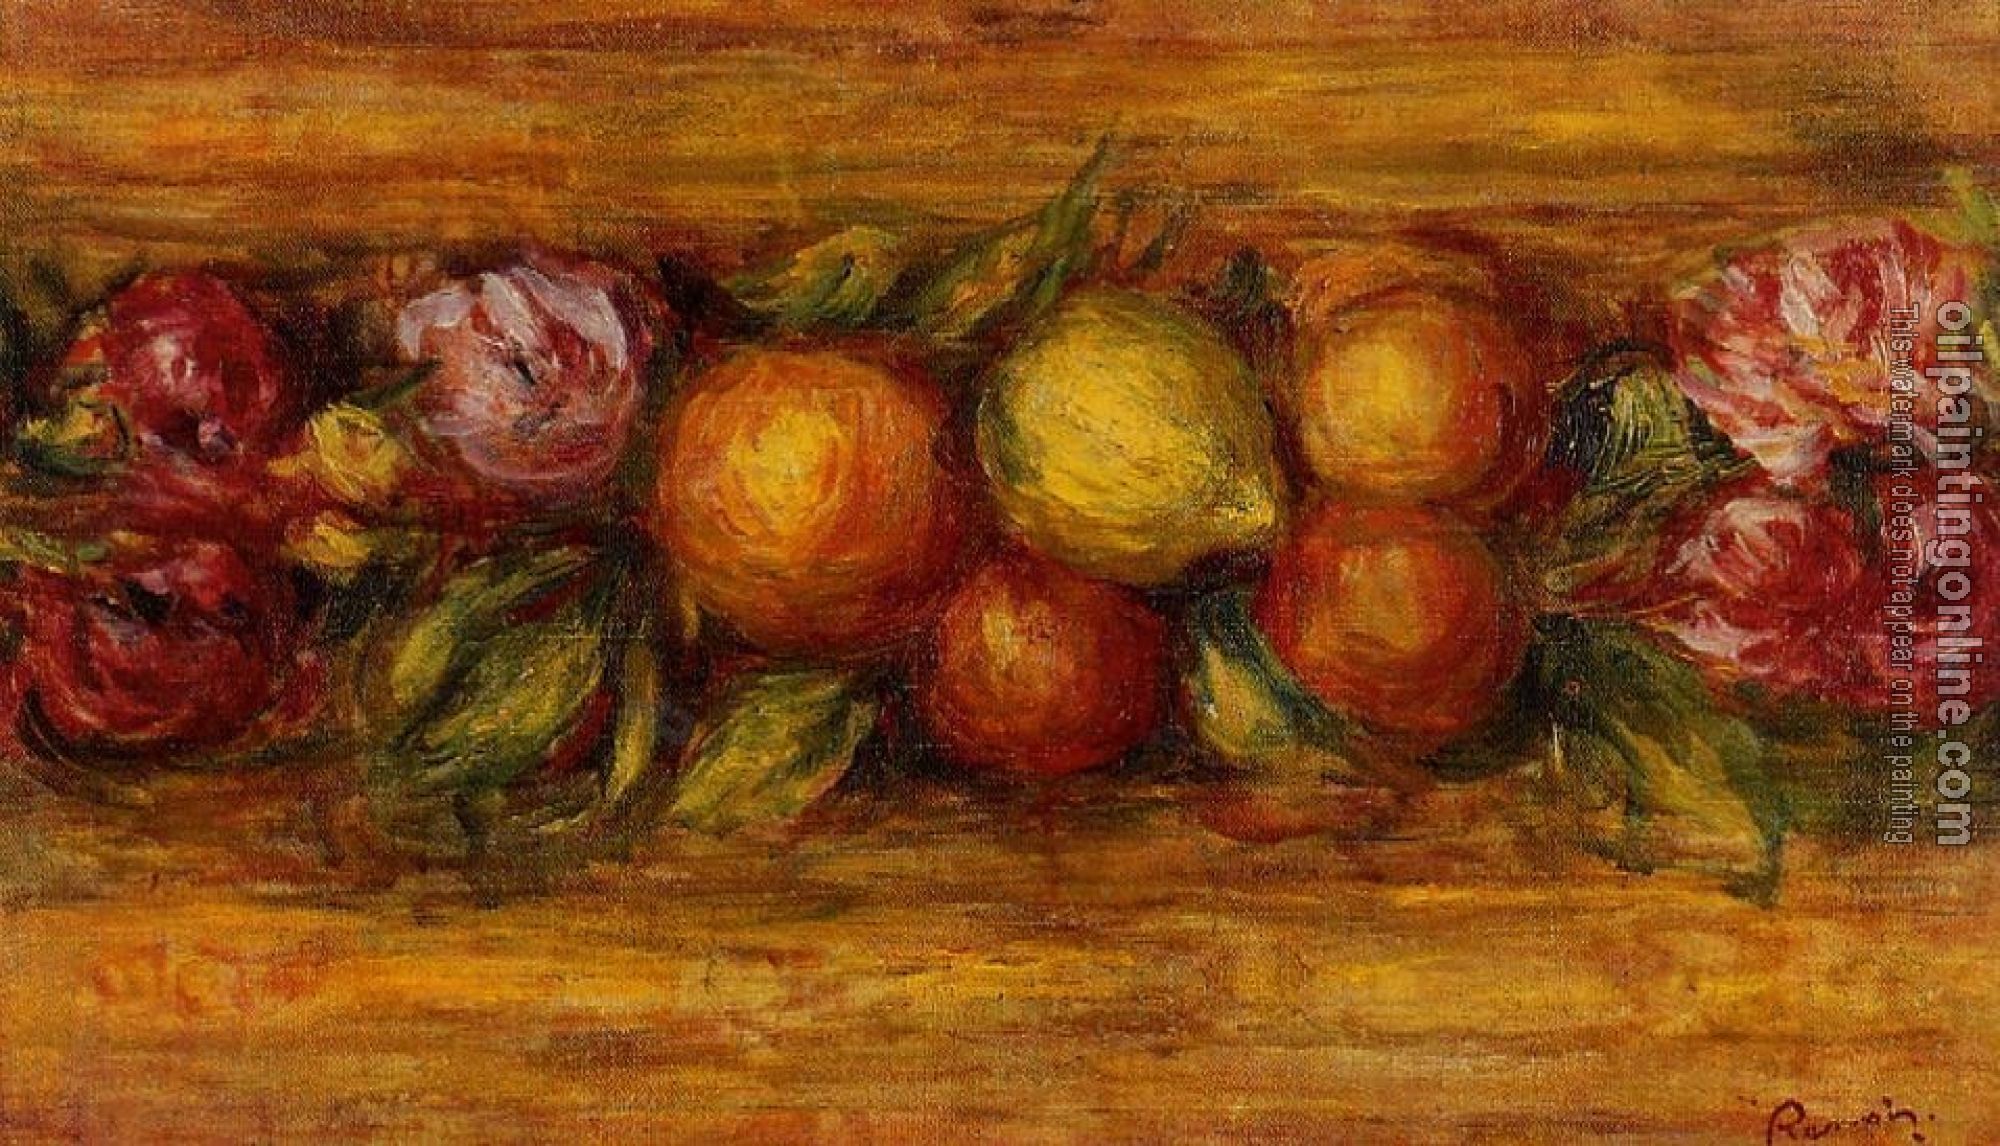 Renoir, Pierre Auguste - Garland of Fruit and Flowers